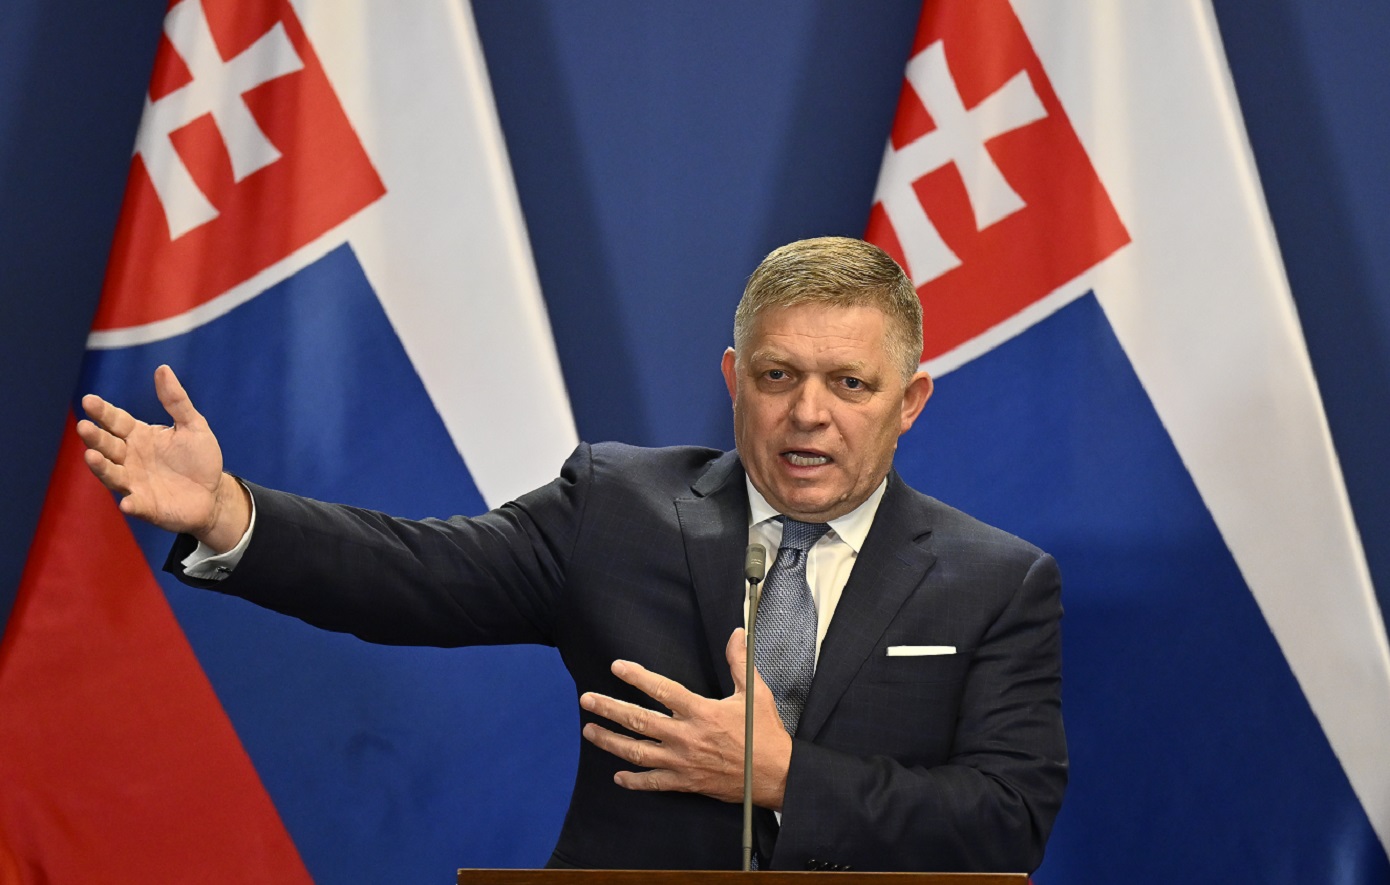 Ο πρωθυπουργός Φίτσο της Σλοβακίας συγκρίνει την επίθεση εναντιον του Ντόναλντ Τραμπ με τη δική του απόπειρα δολοφονίας